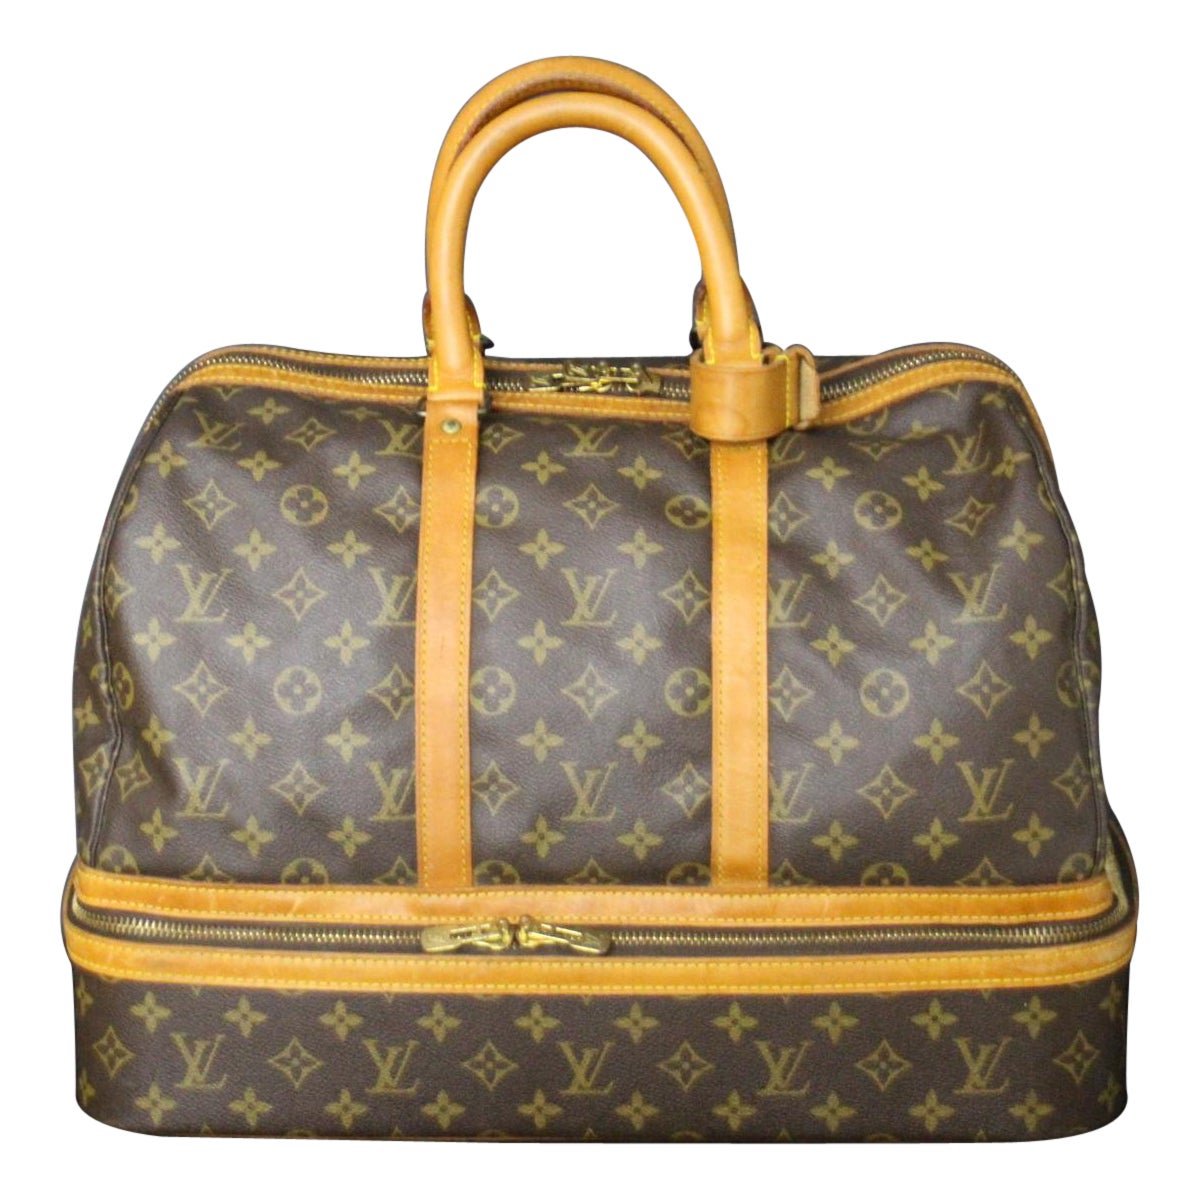 Large Louis Vuitton Bag, Large Louis Vuitton Duffle Bag, Vuitton Boston Bag For Sale